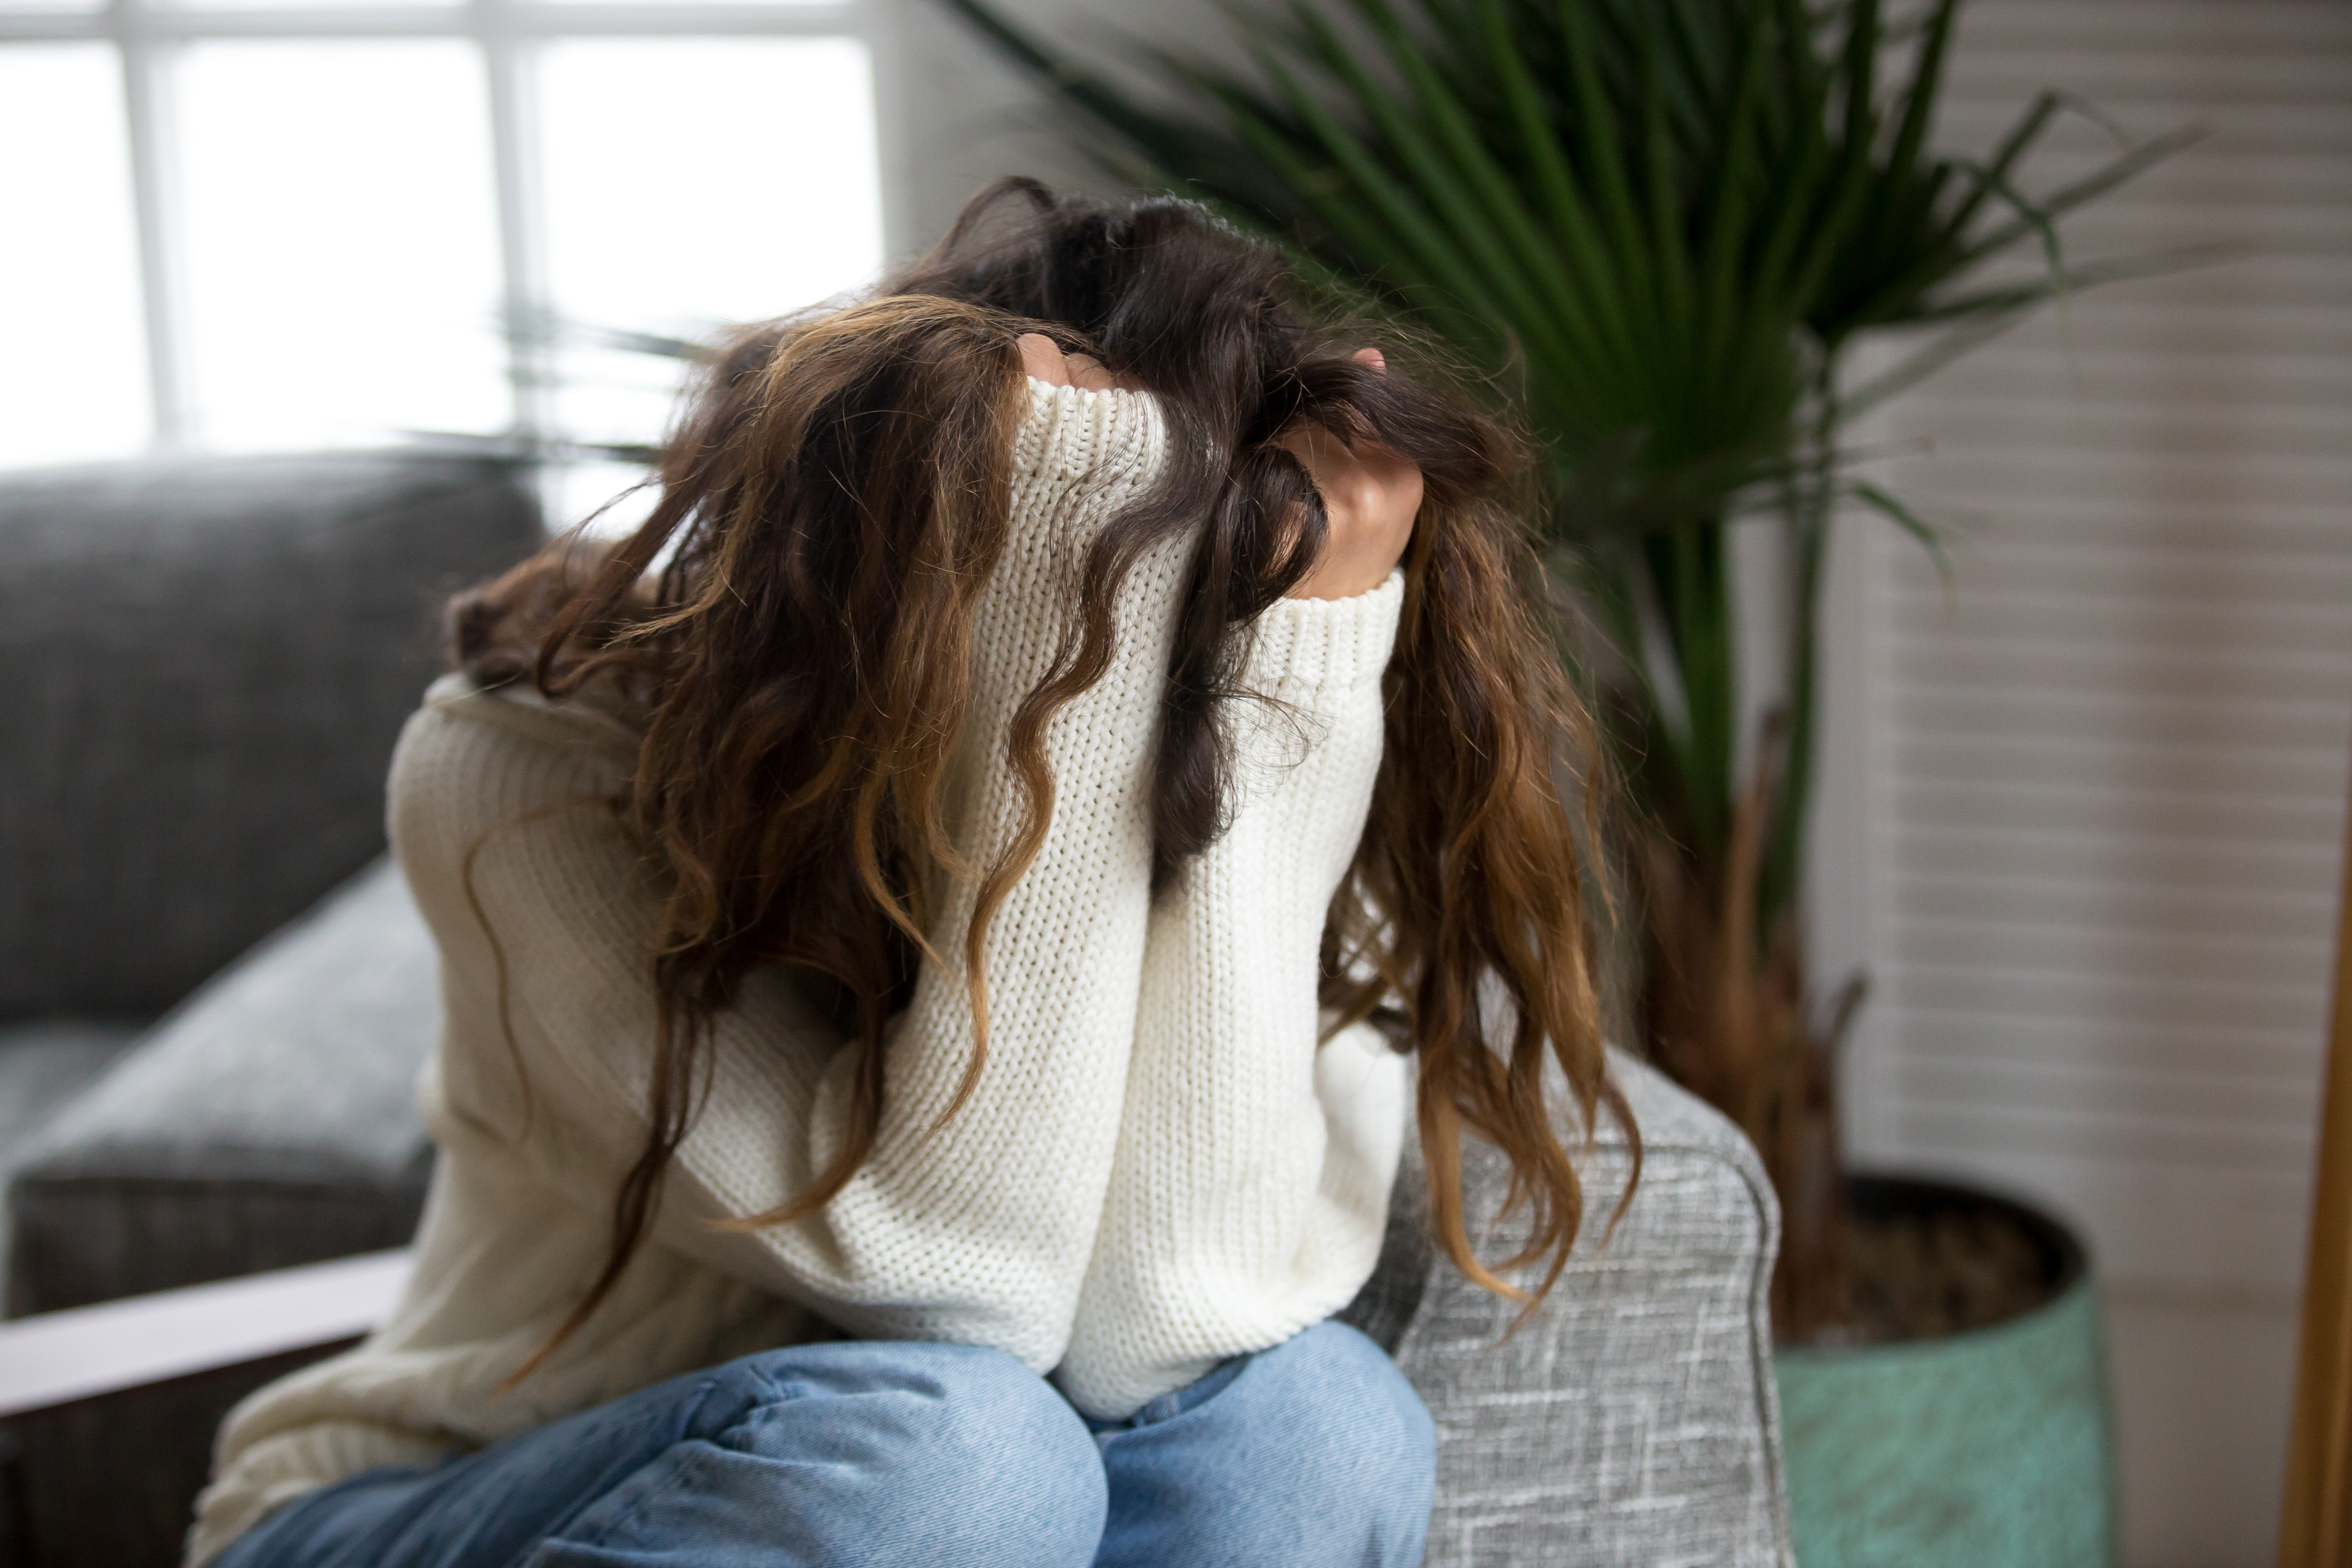 Eine depressive Frau, die ihr Gesicht mit ihren Händen versteckt | Quelle: Shutterstock